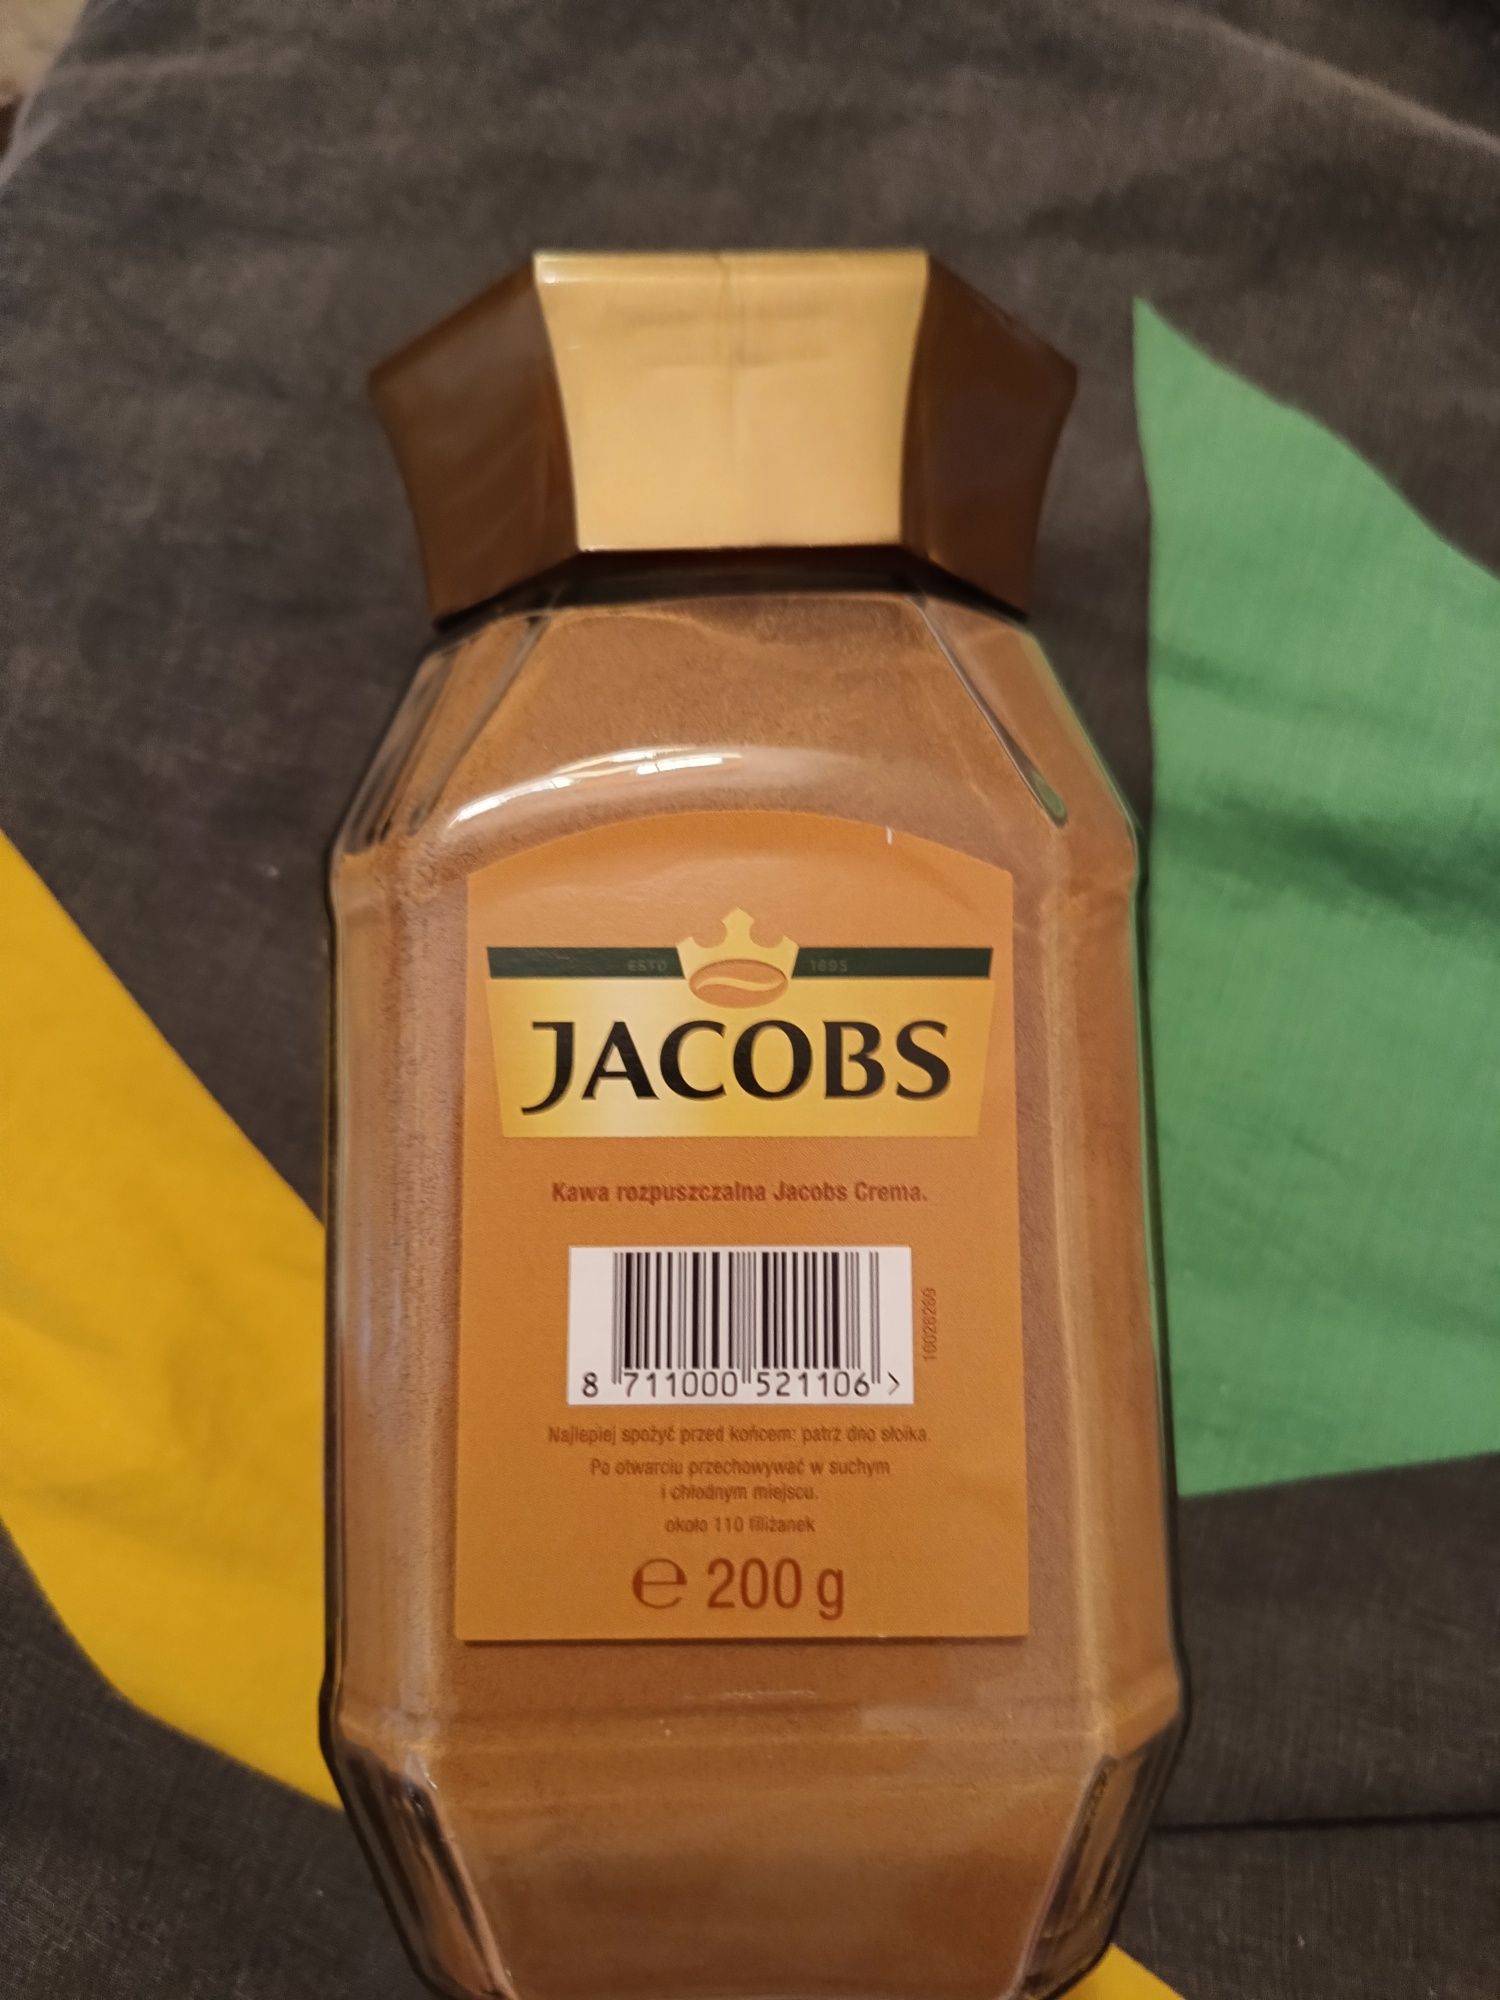 Kawa Jacobs Crema,200g.